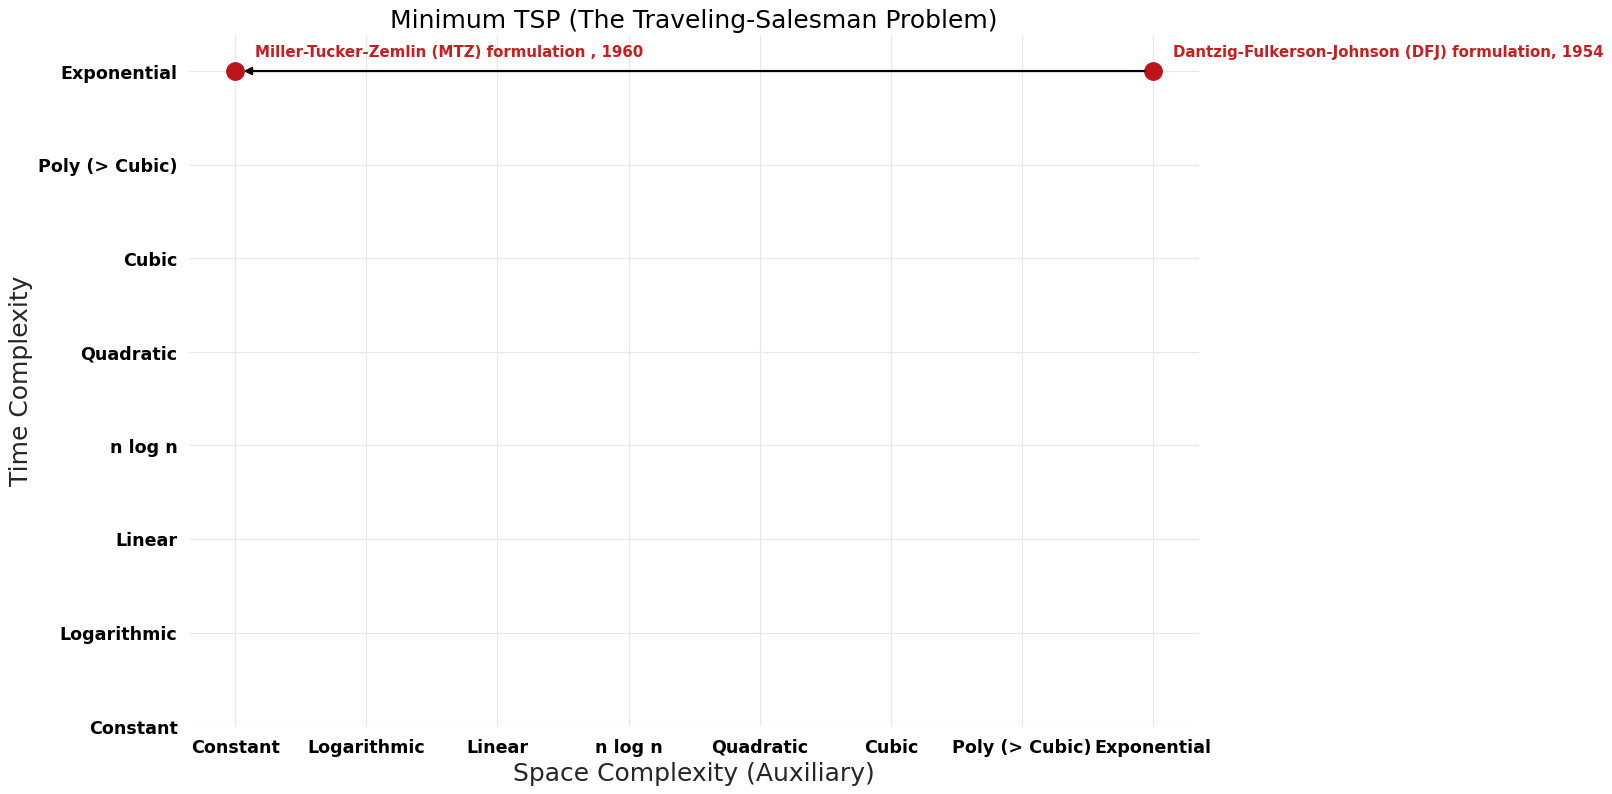 The Traveling-Salesman Problem - Minimum TSP - Pareto Frontier.png